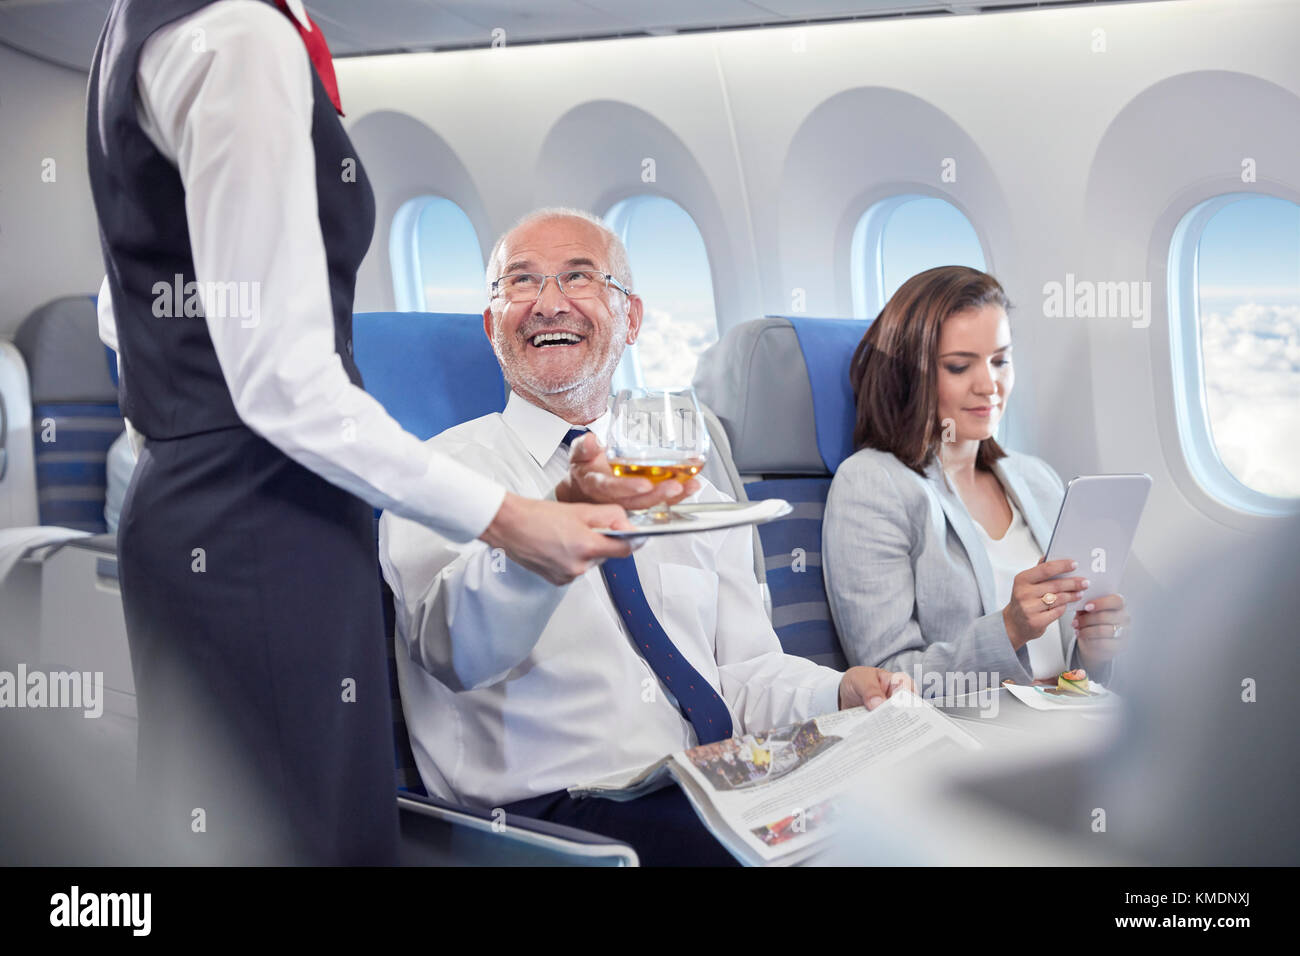 Der Flugbegleiter serviert dem lächelnden Geschäftsmann, der zuerst auf der Fahrt ist, Whiskey Klasse im Flugzeug Stockfoto